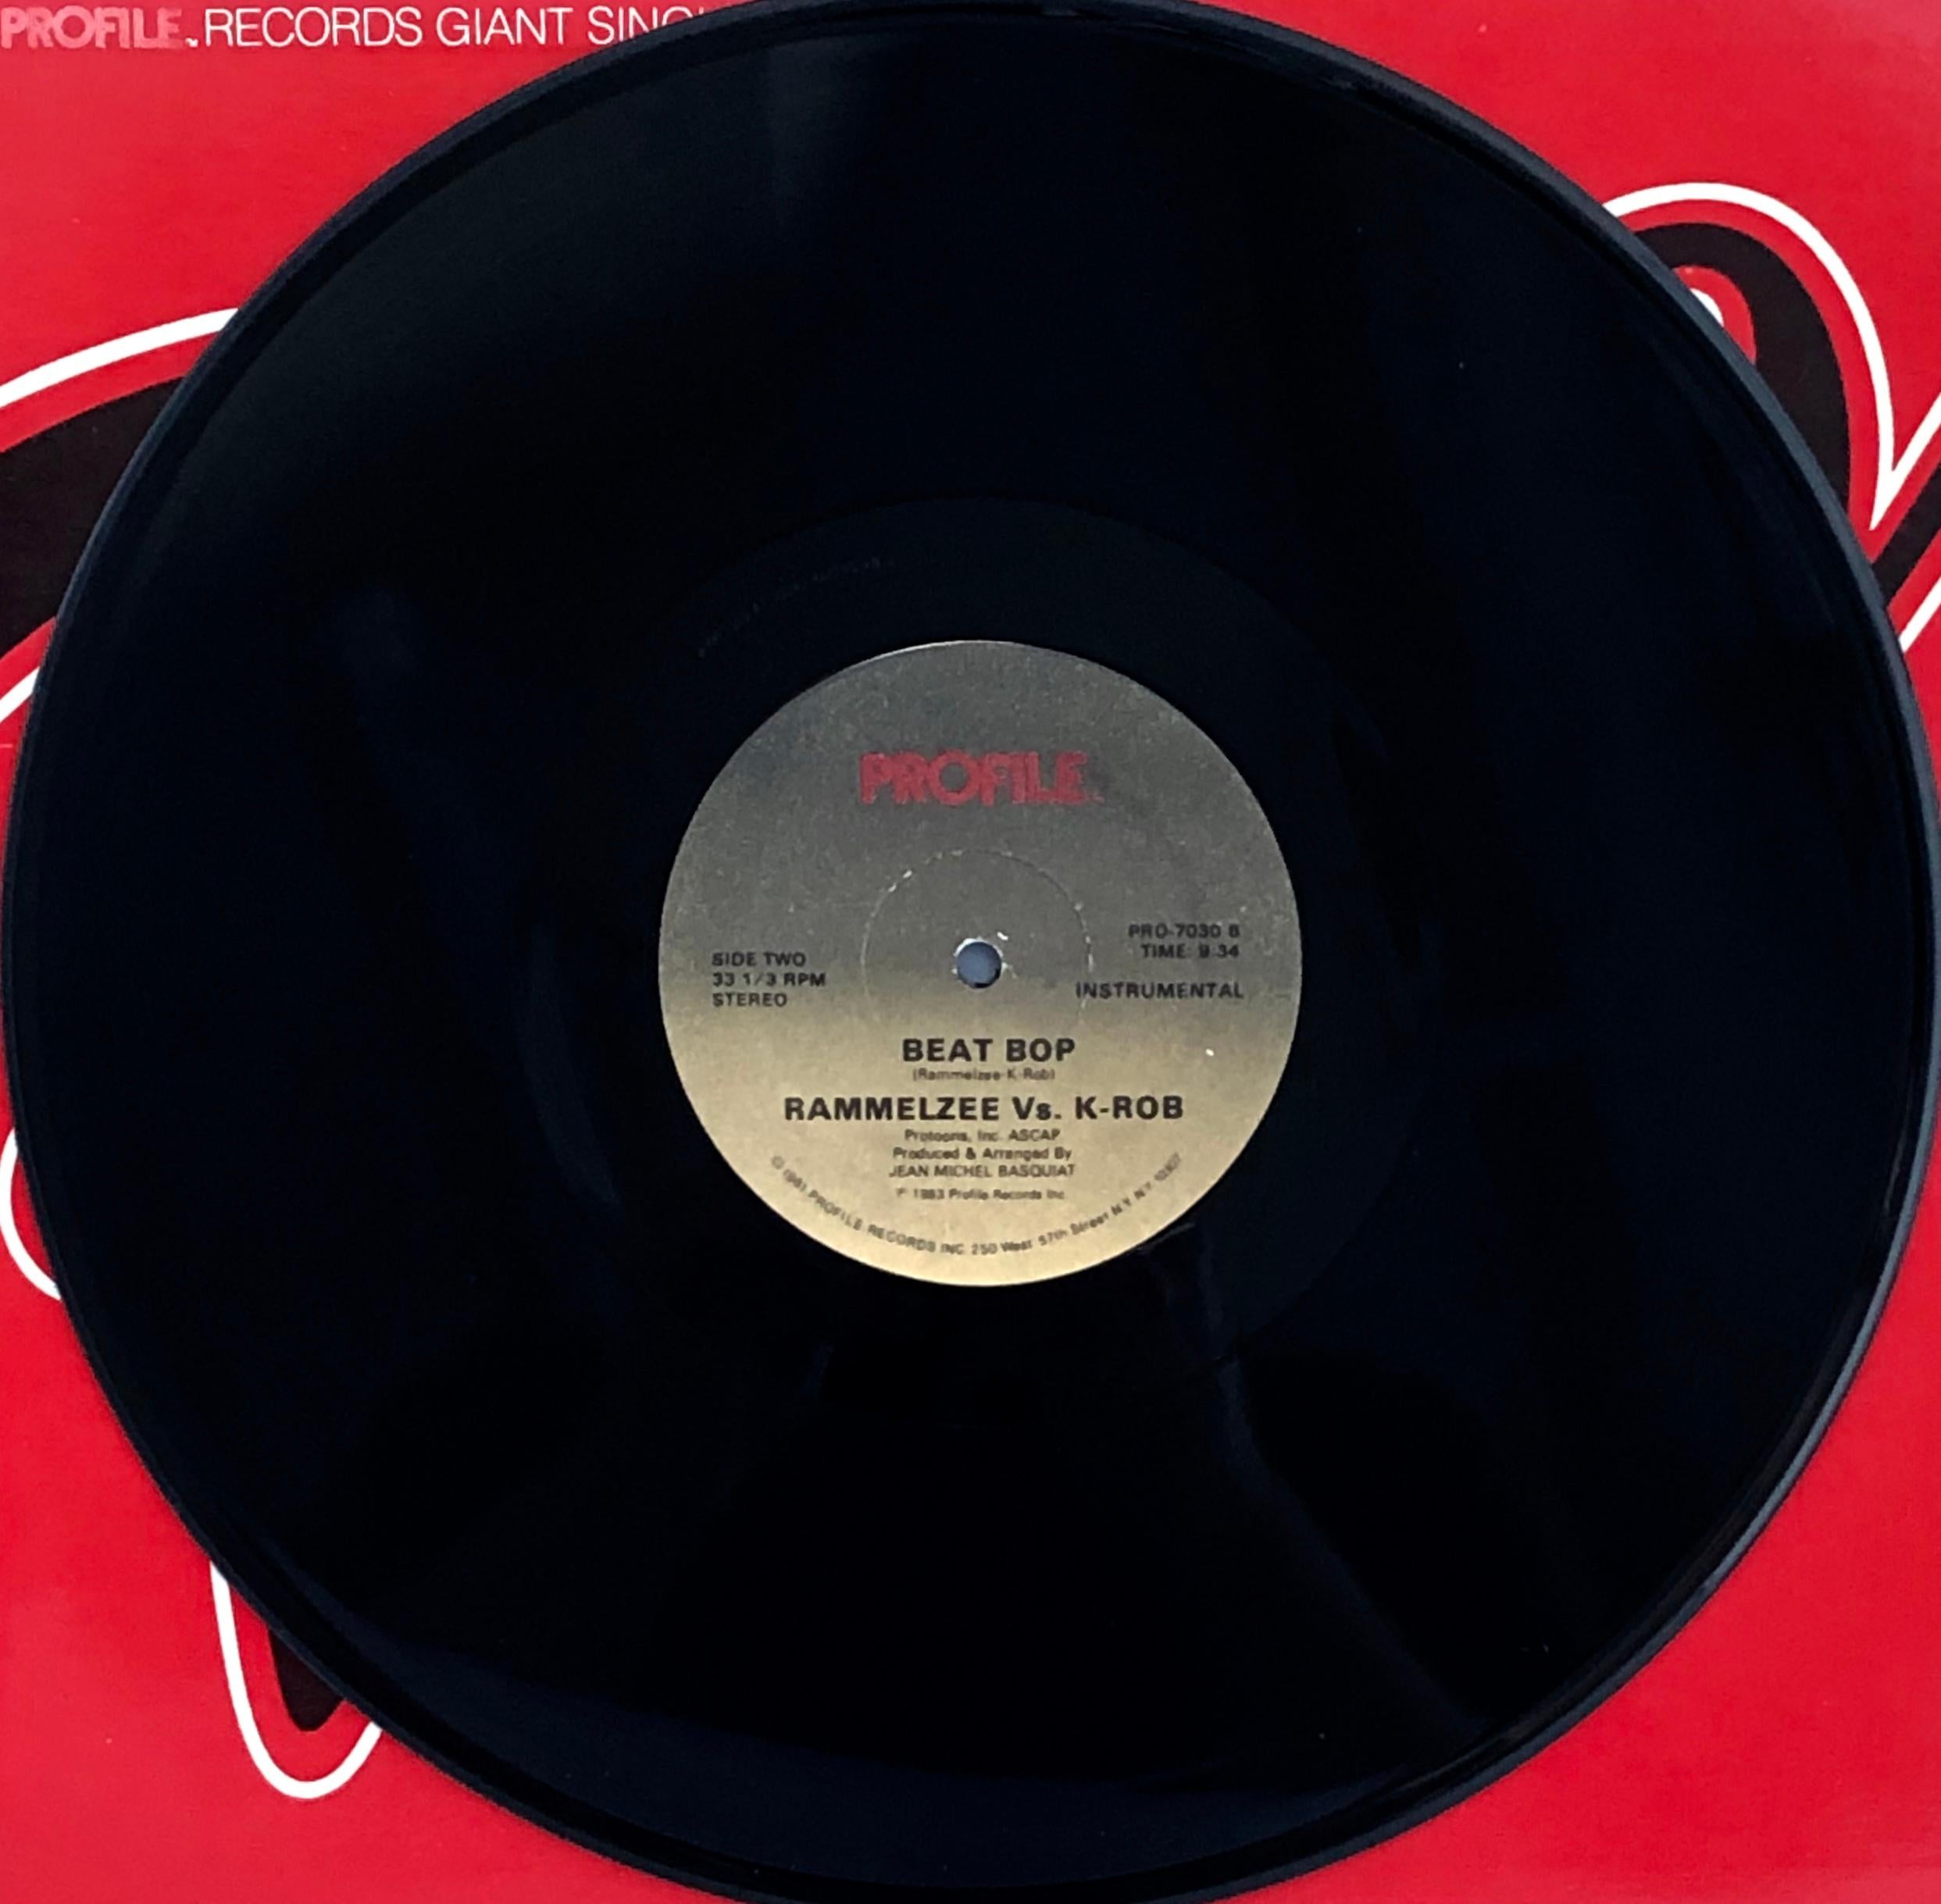 Rammellzee vs. K-Rob
Beat Bop, 1983
Vinyl, 12